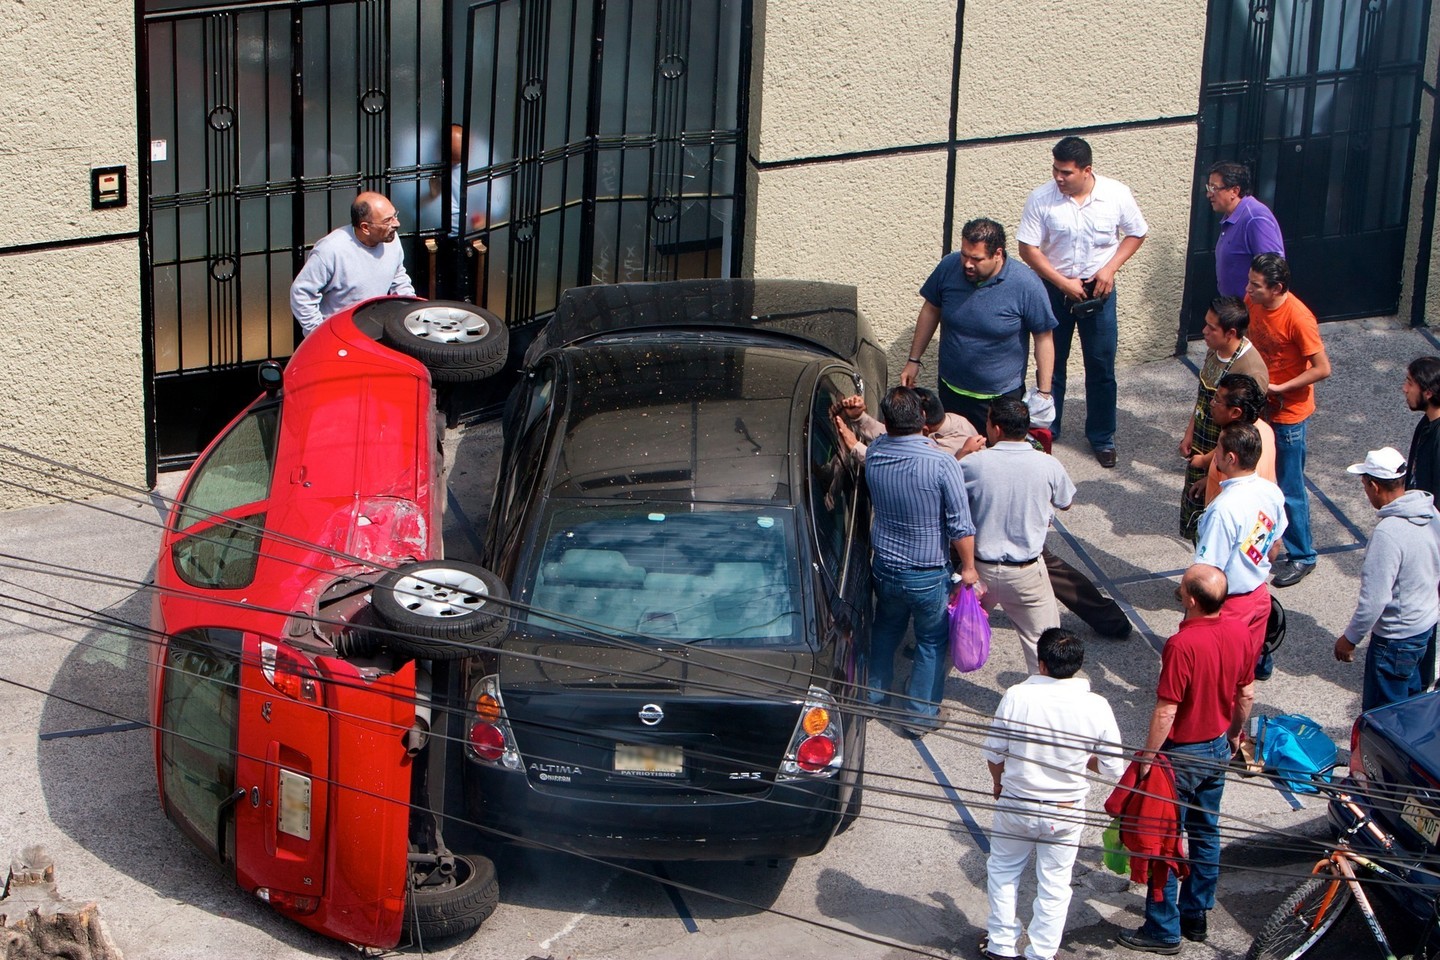 Beprotiškiausios automobilių avarijos nustebins ir visko mačiusius vairuotojus.<br>Pulpolux !!!/Flickr.com nuotr.